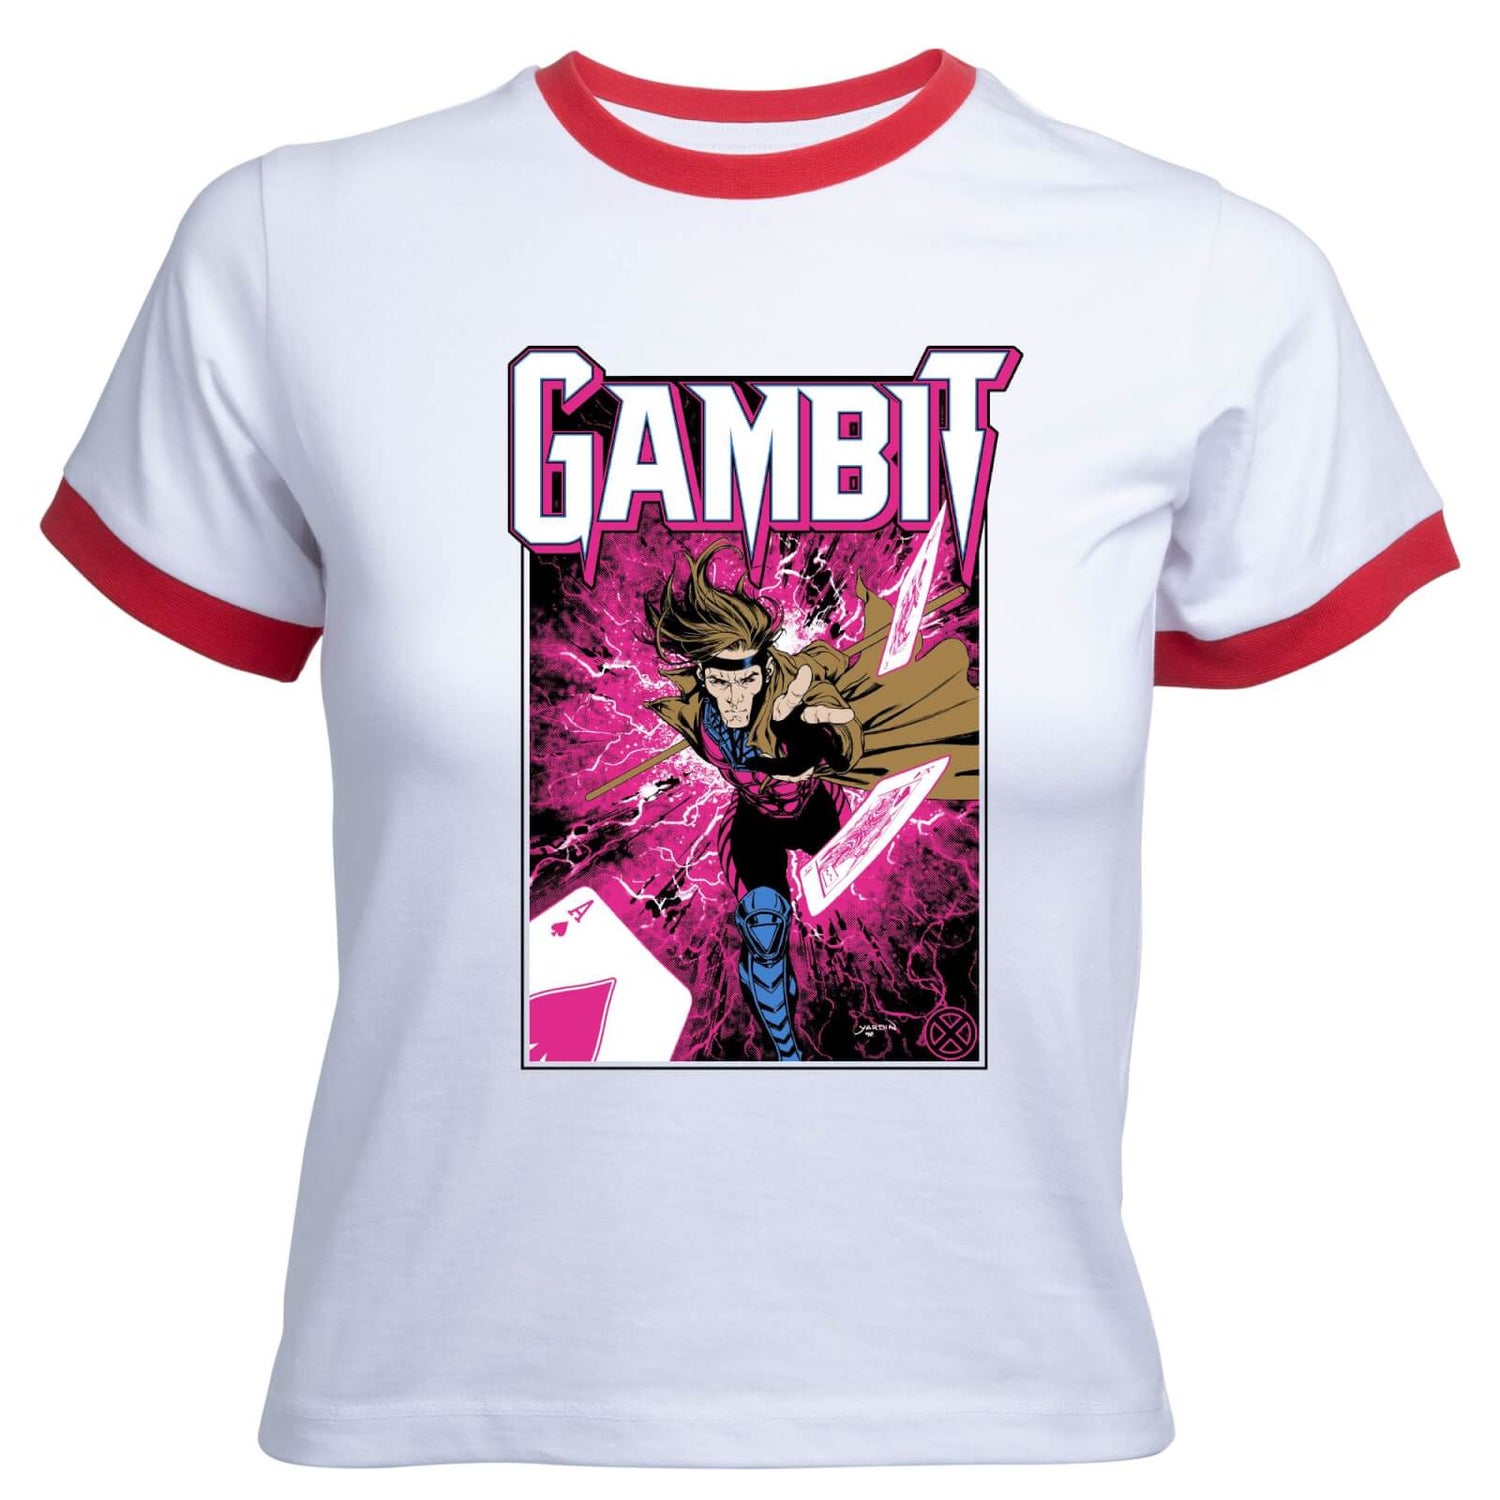 X-Men Gambit Women's Cropped Ringer T-Shirt - White Red